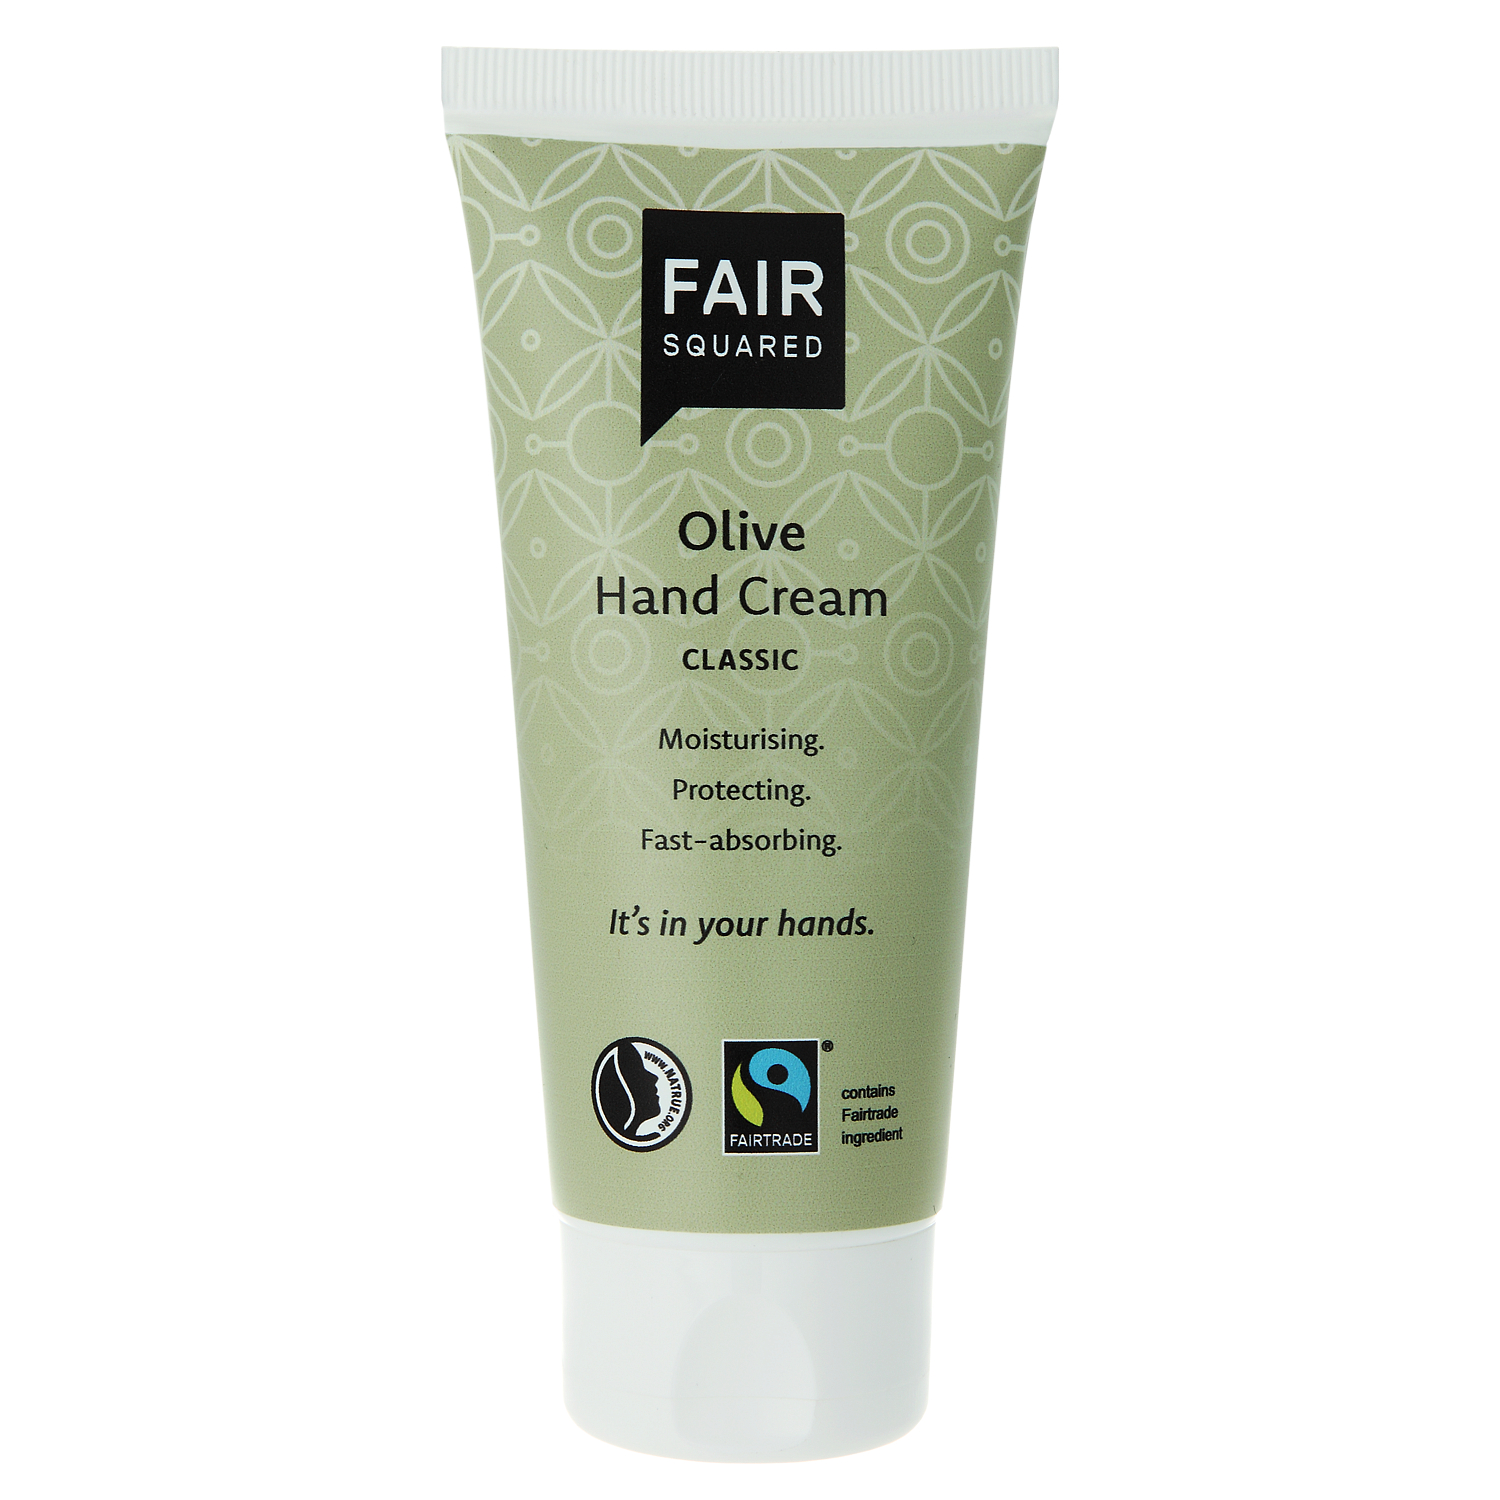  Fair Squared Hand Cream Classic Olive 100ml